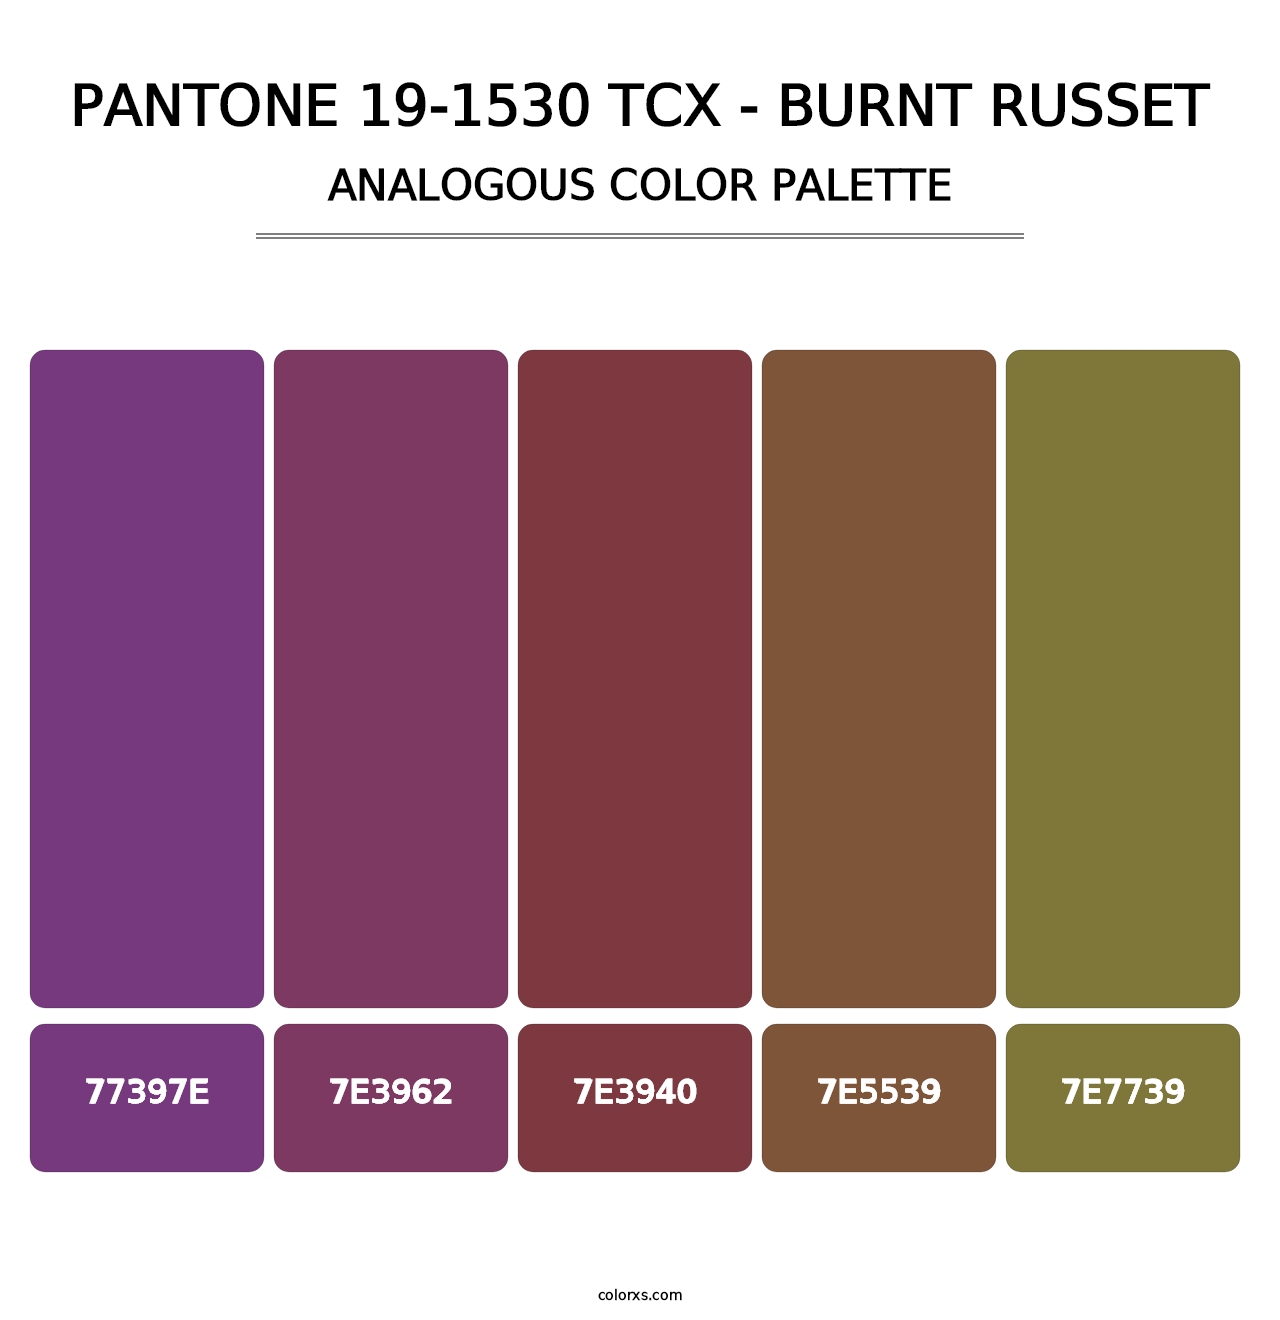 PANTONE 19-1530 TCX - Burnt Russet - Analogous Color Palette